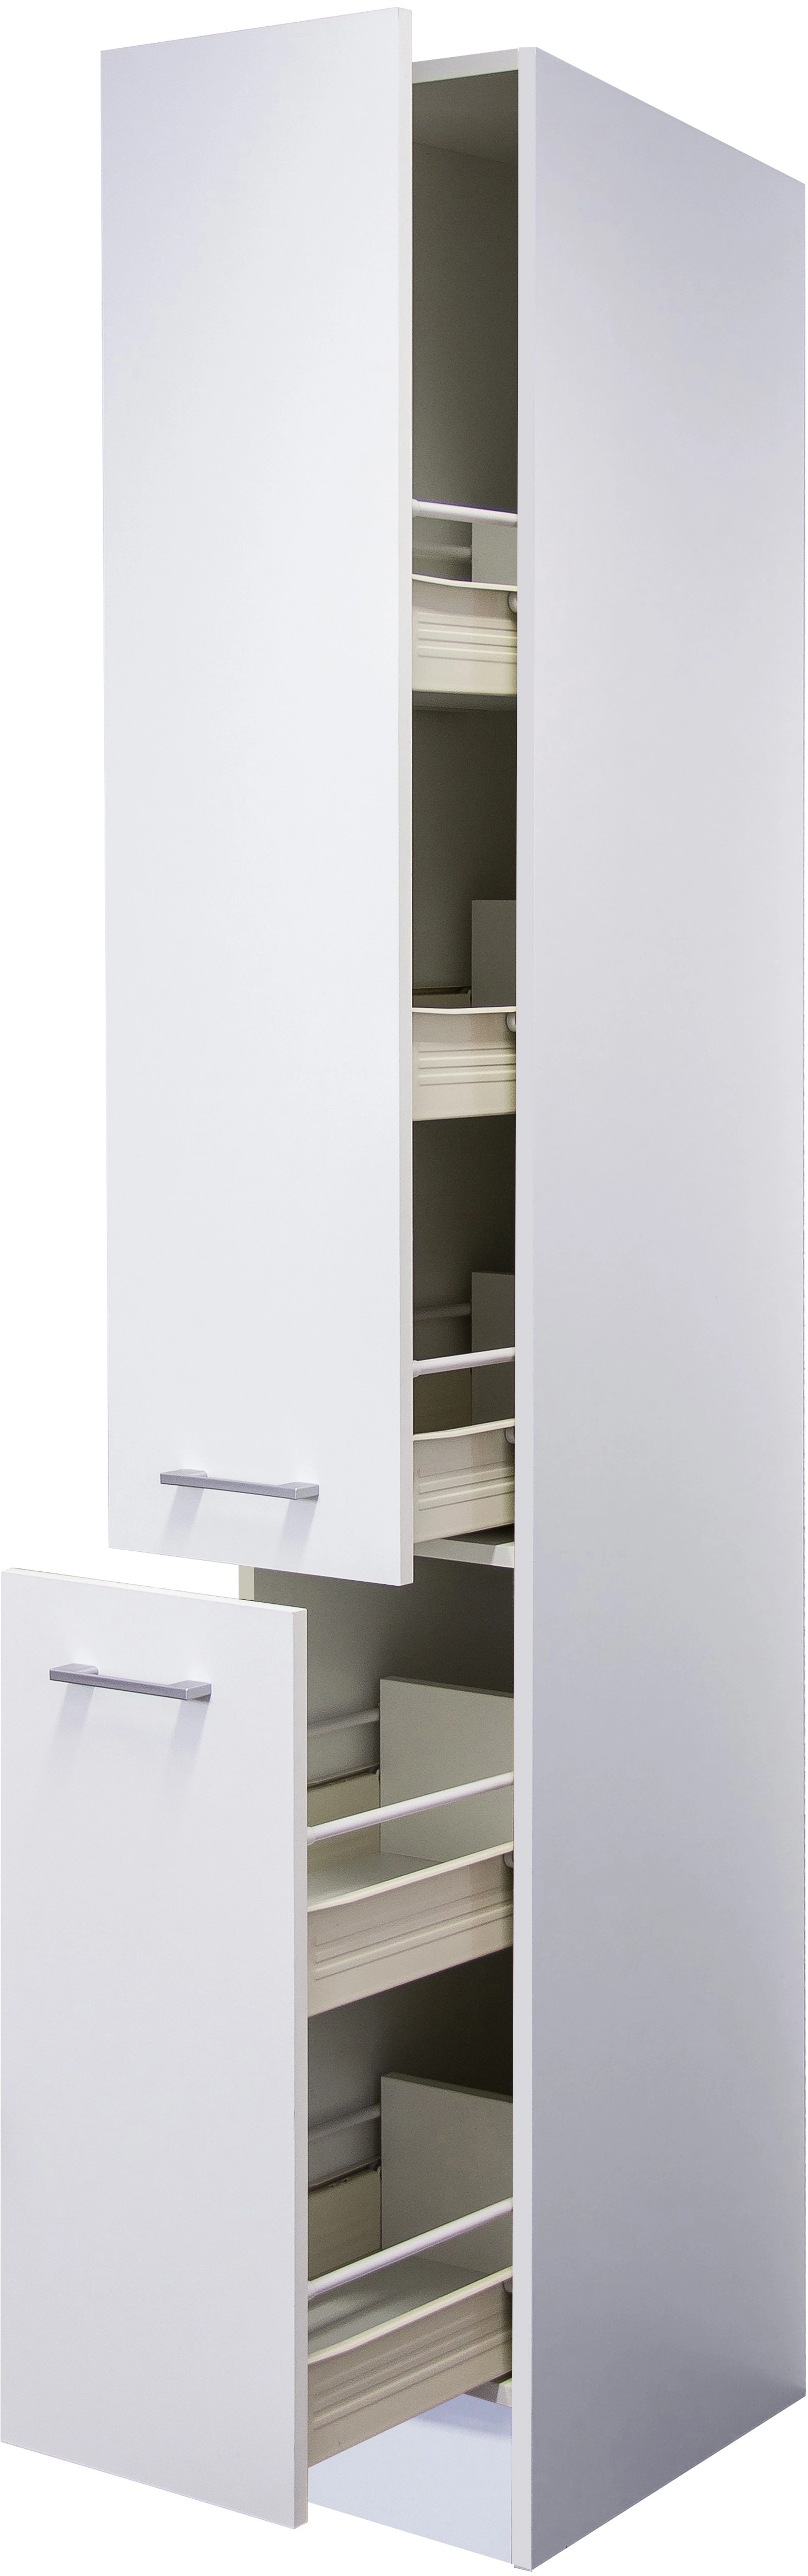 Flex-Well Classic Apotheker-Hochschrank Lucca 30 cm Weiß kaufen bei OBI